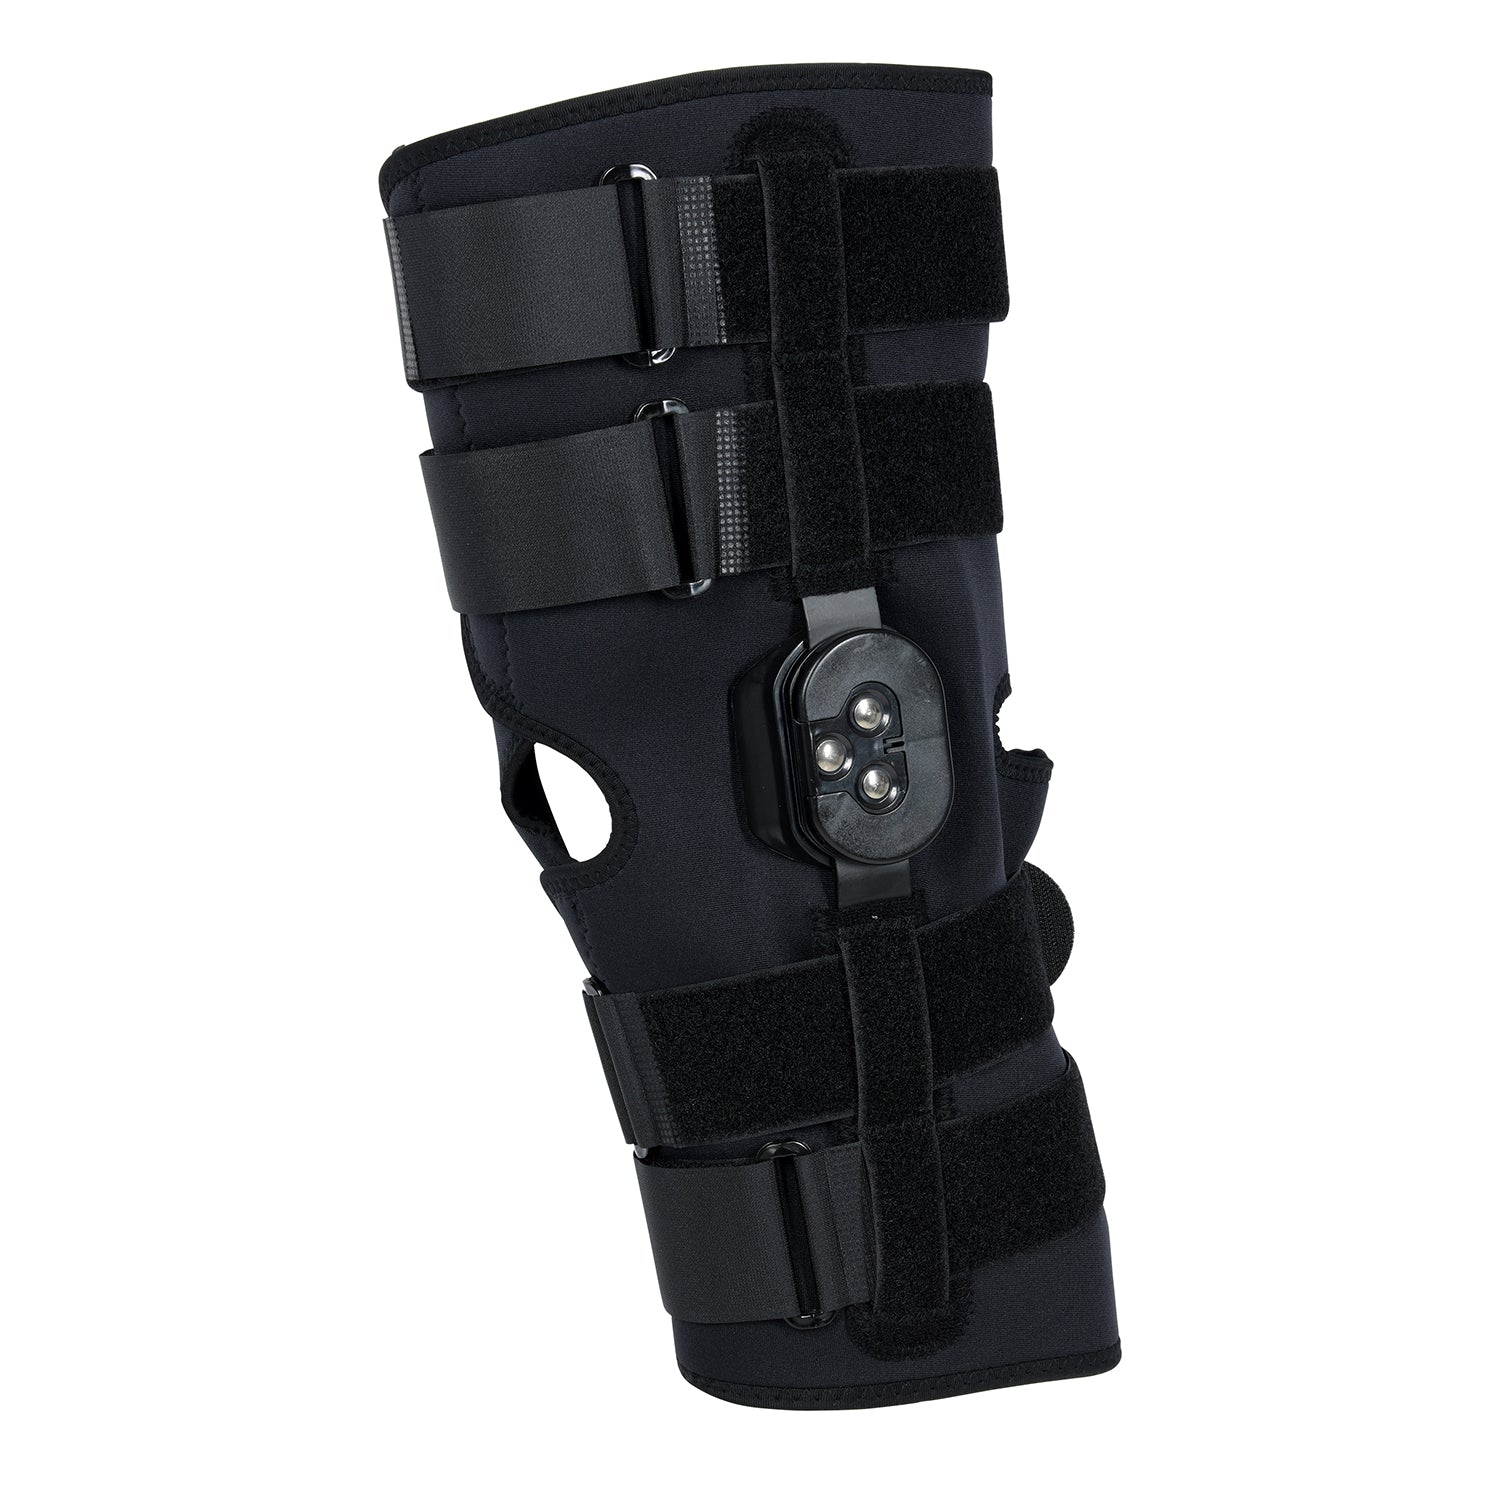 Aidfull Adjustable Hinged Knee Brace 12”